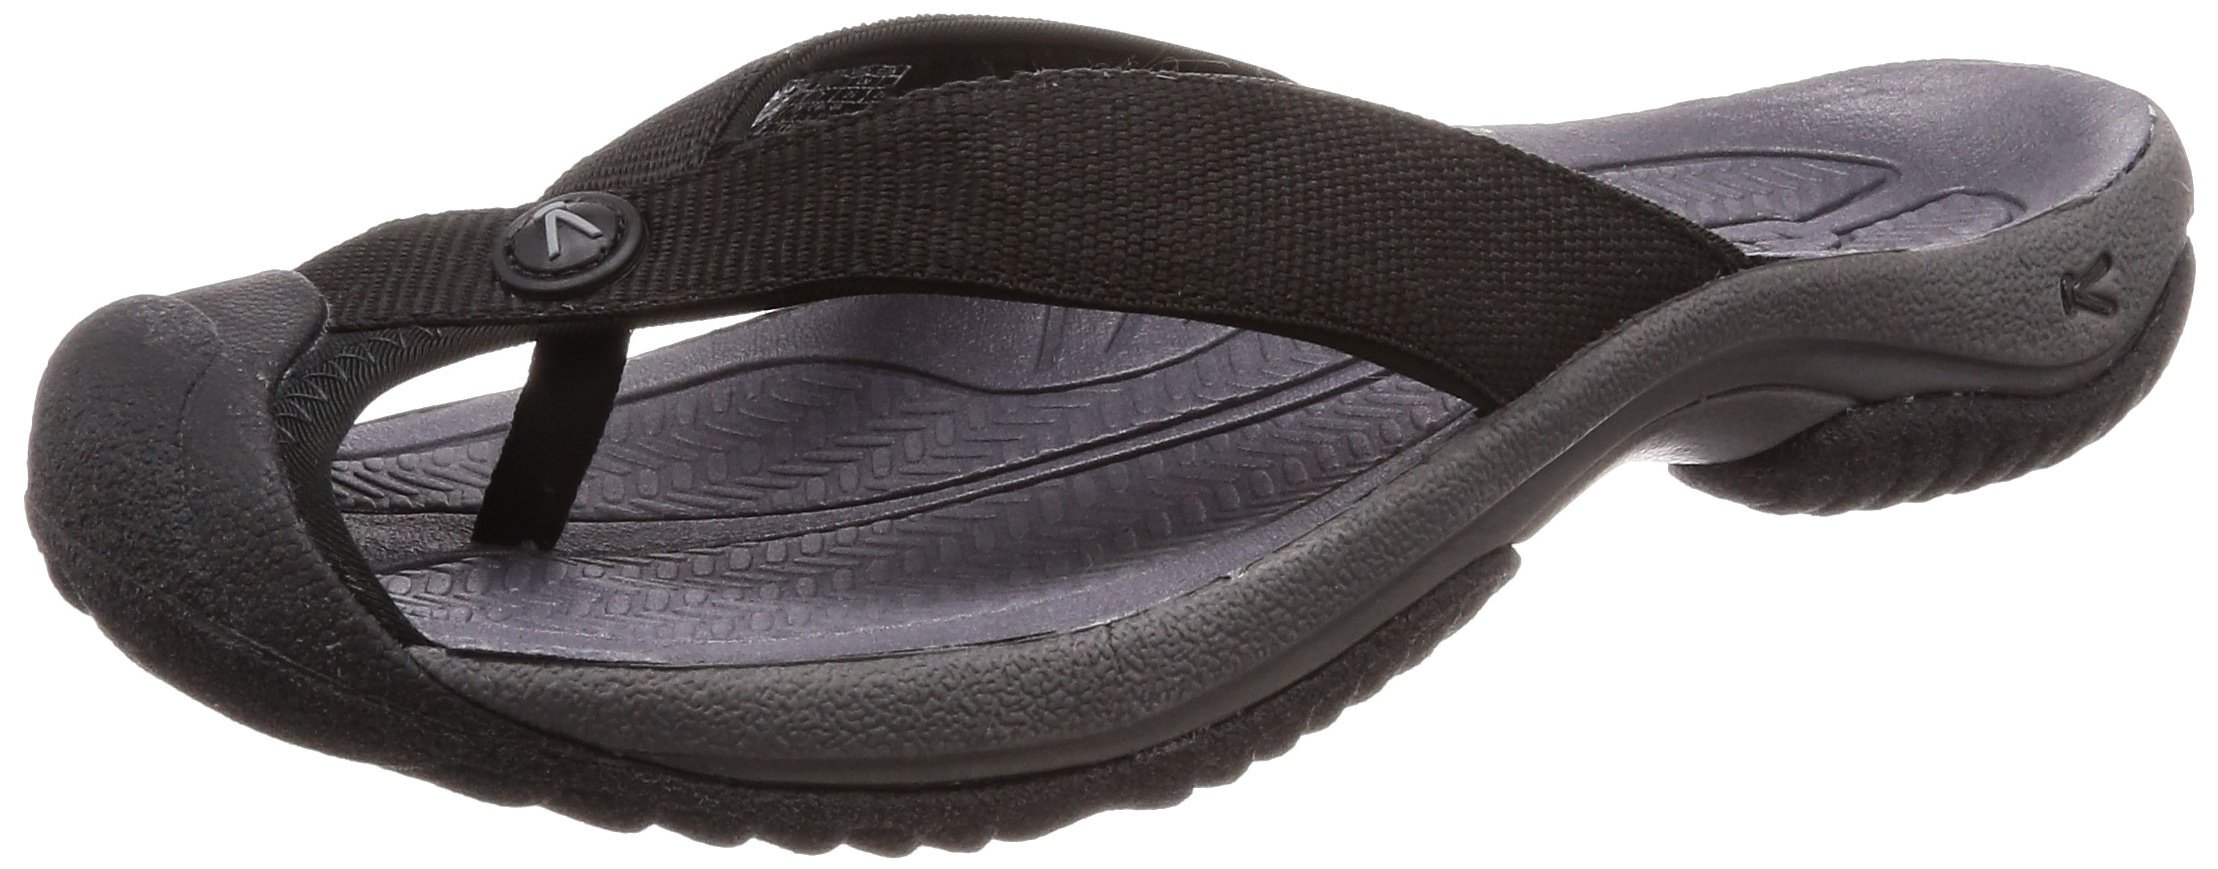 Keen 1019210: Men's Waimea H2 Black/Steel Grey Sandal | eBay